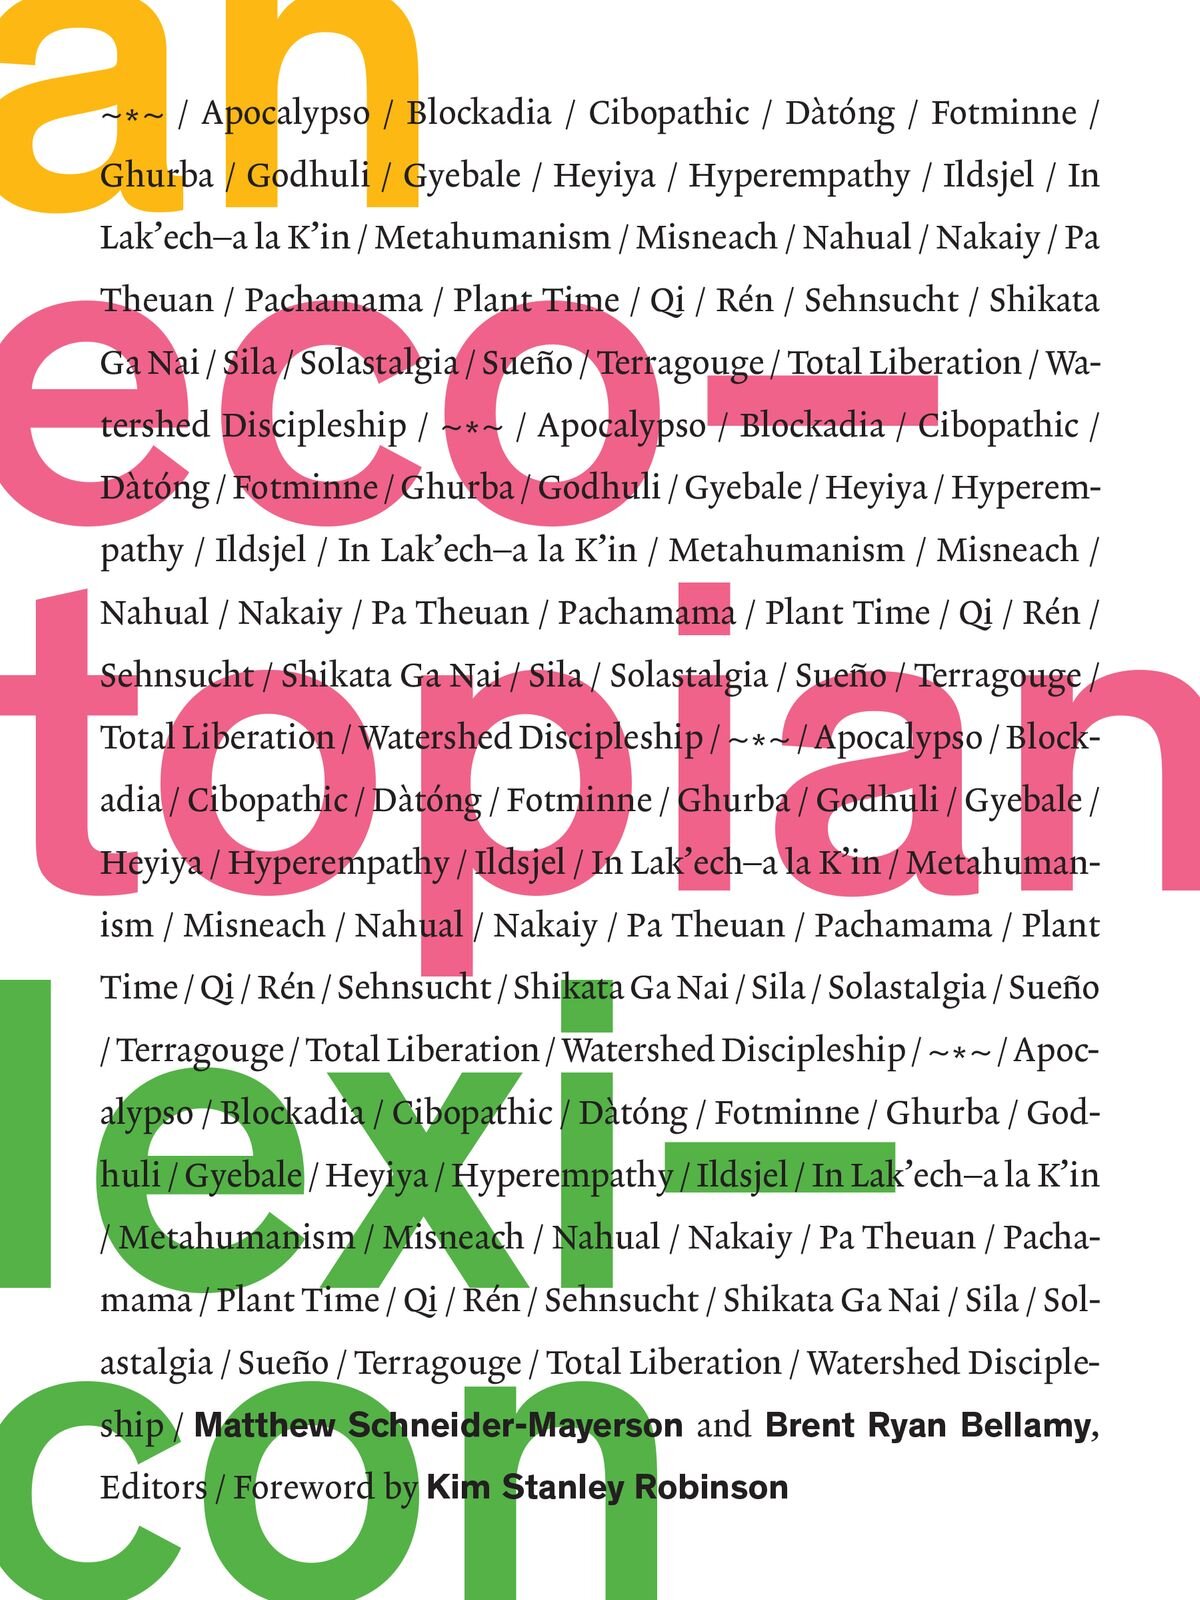 an-ecotopian-lexicon.jpg